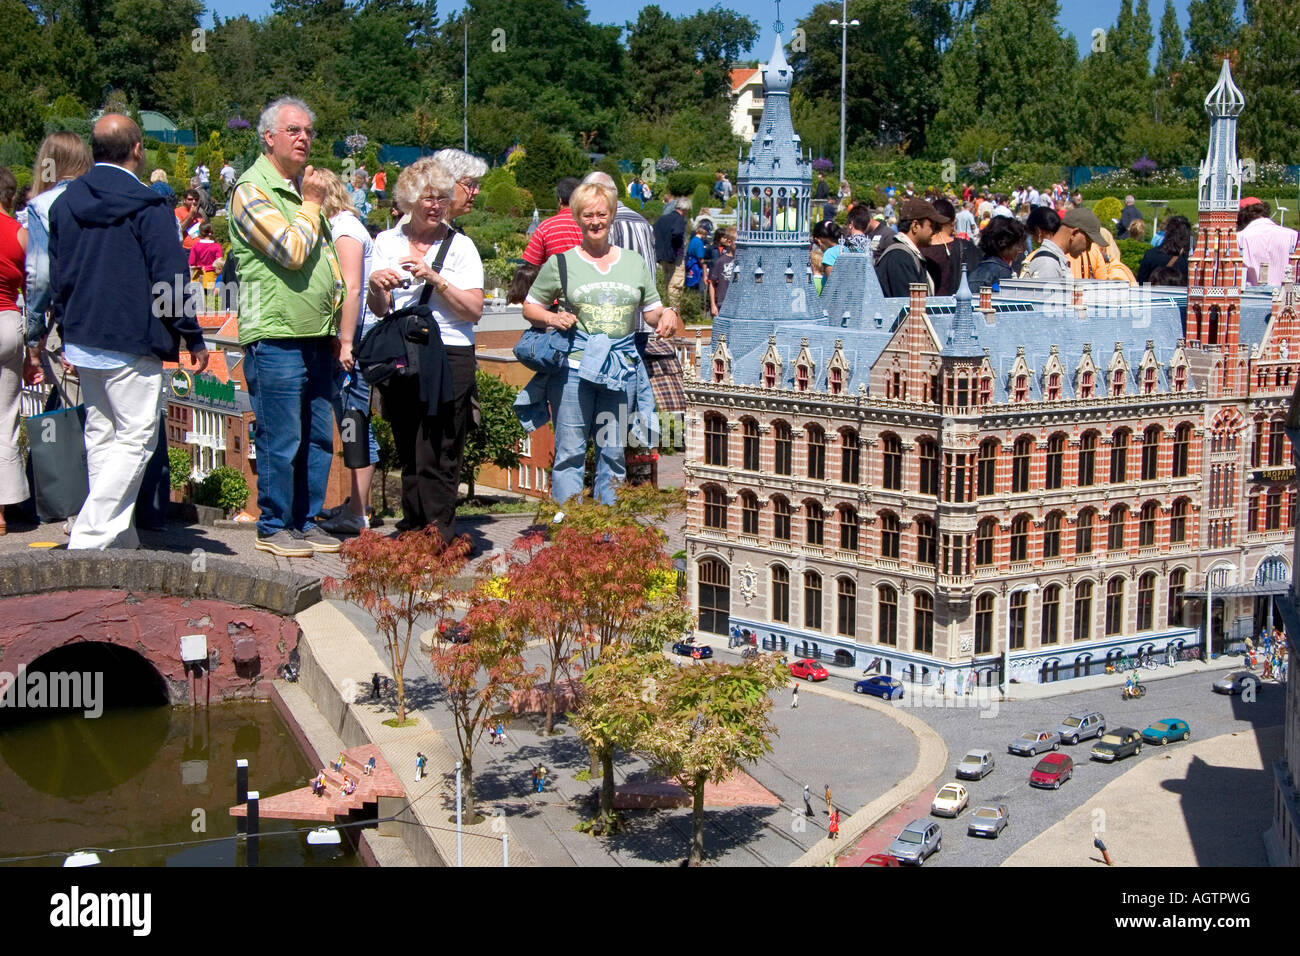 La ville miniature Madurodam à La Haye dans la province de Hollande-méridionale Pays-Bas Banque D'Images